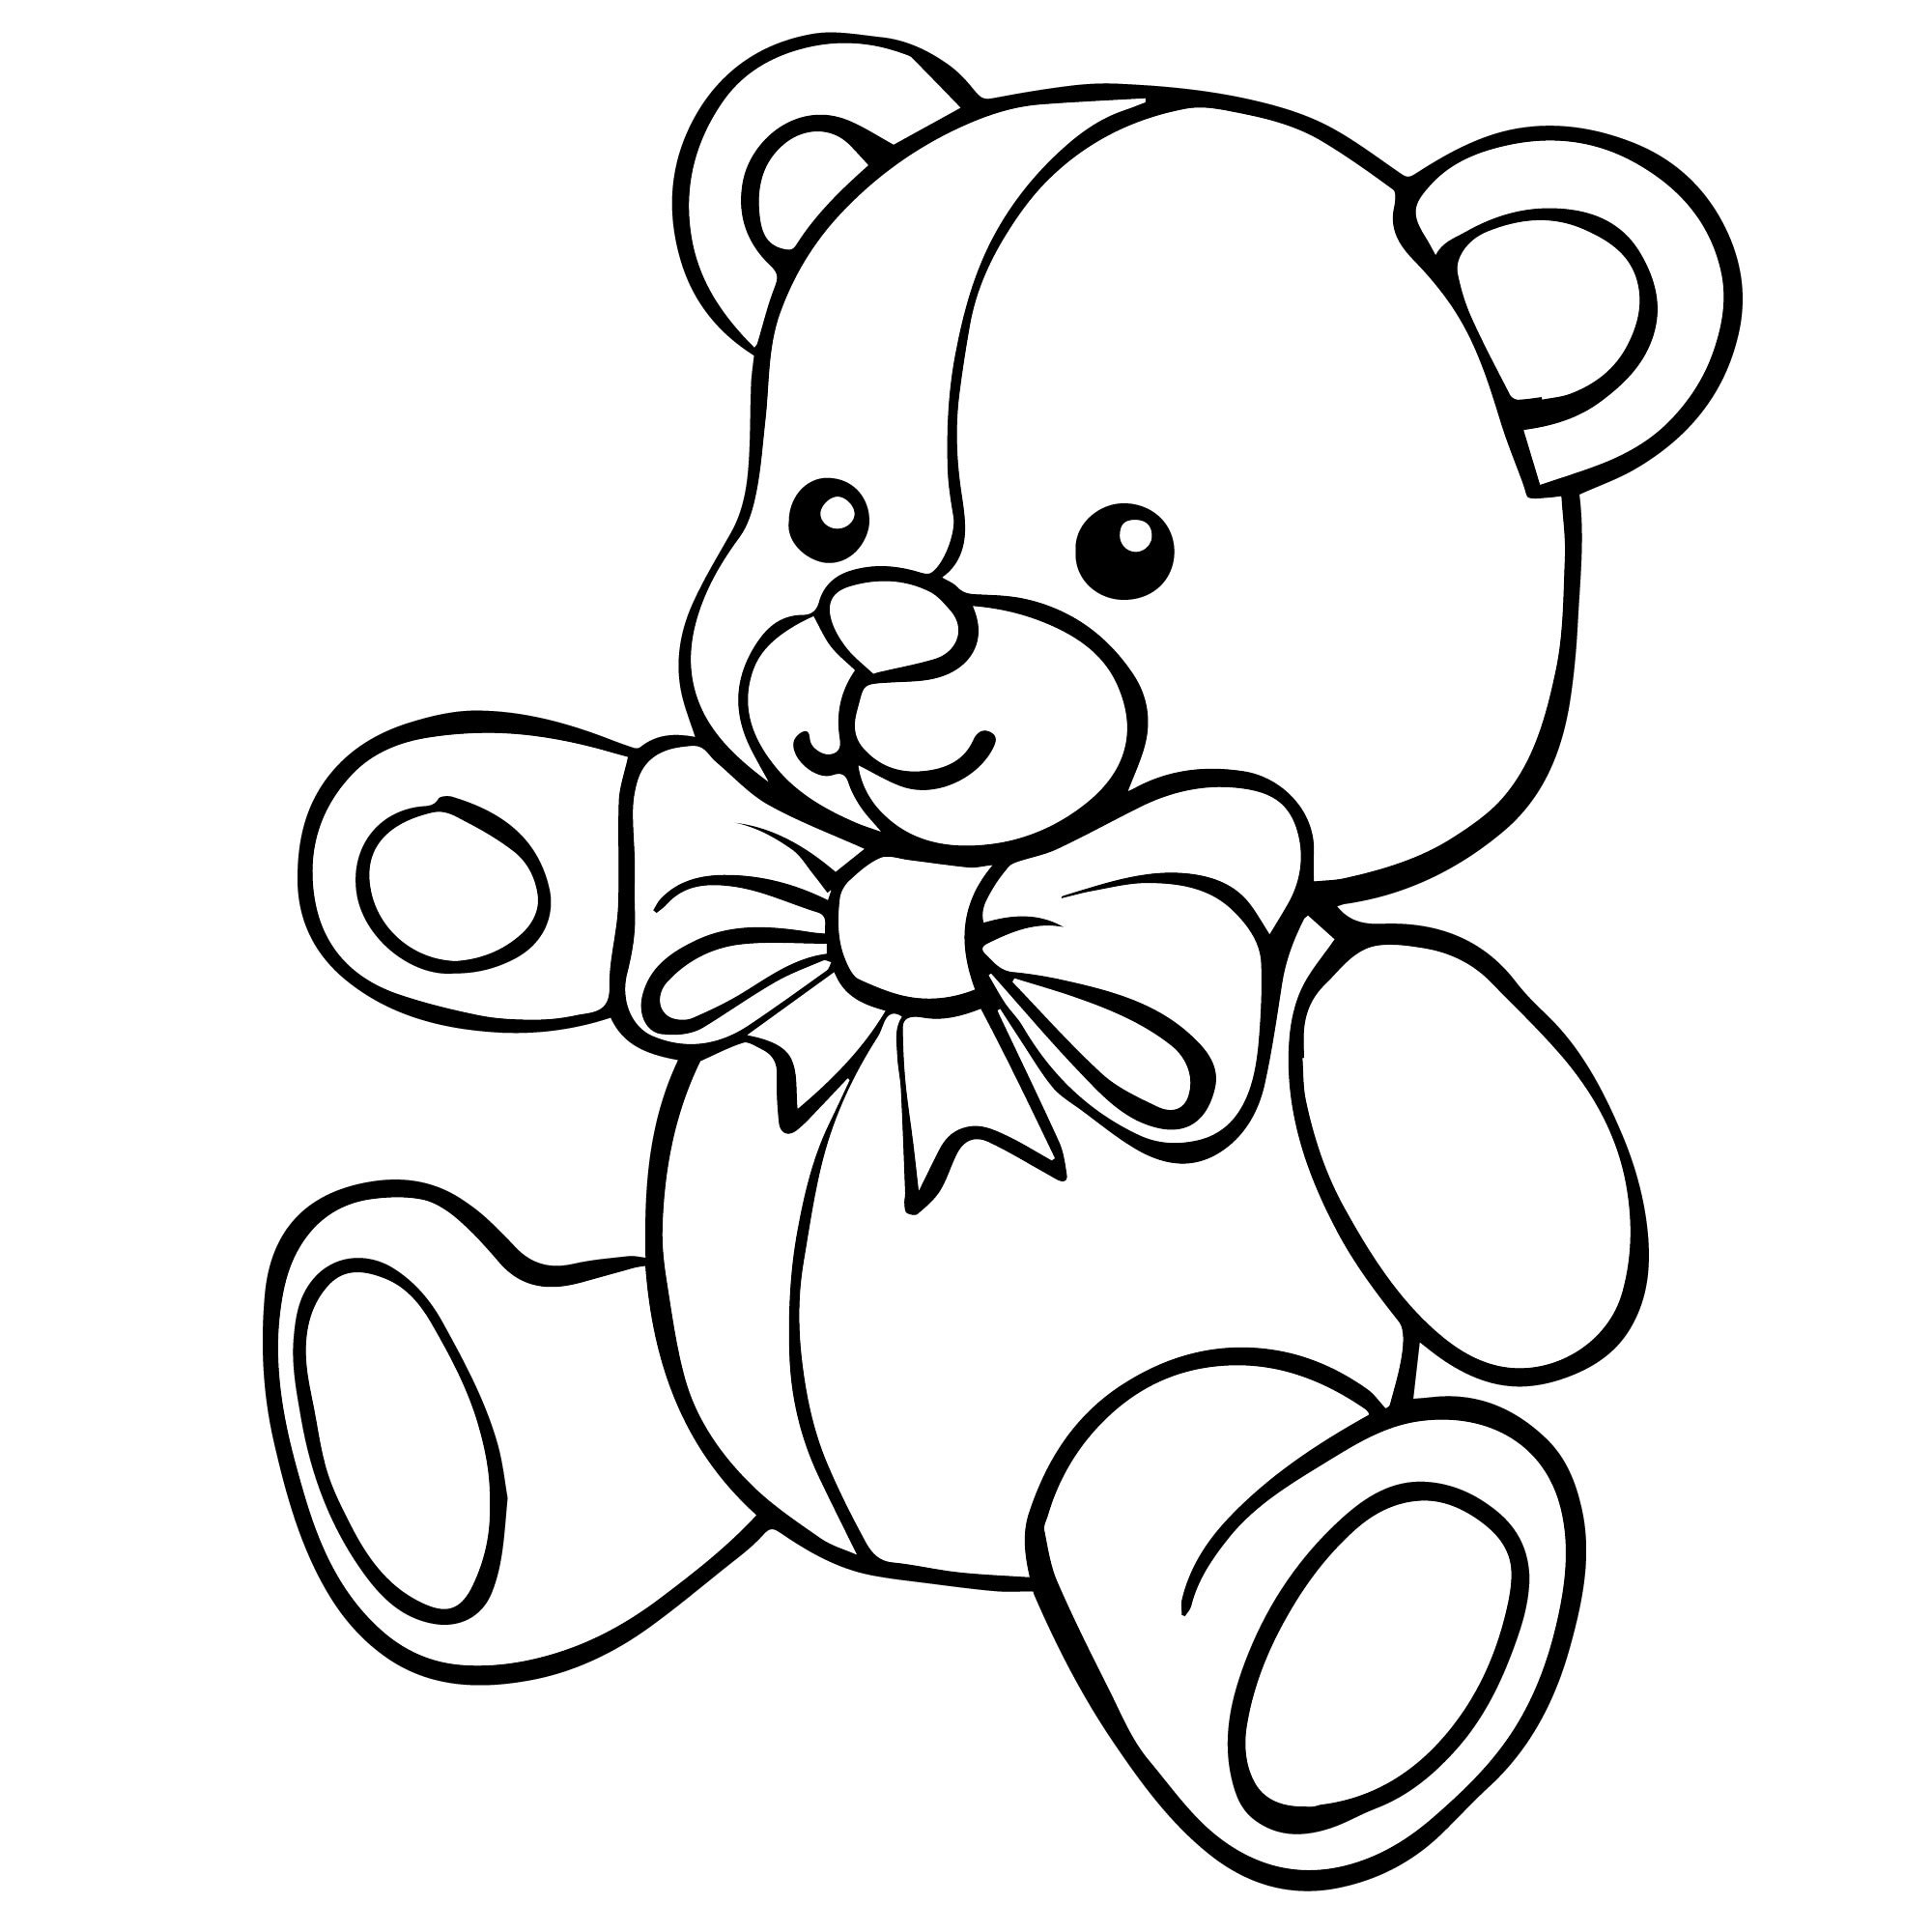 Раскраска игрушка картинка. Раскраска "мишки". Раскраска. Медвежонок. Плюшевый мишка раскраска. Медвежонок раскраска для детей.